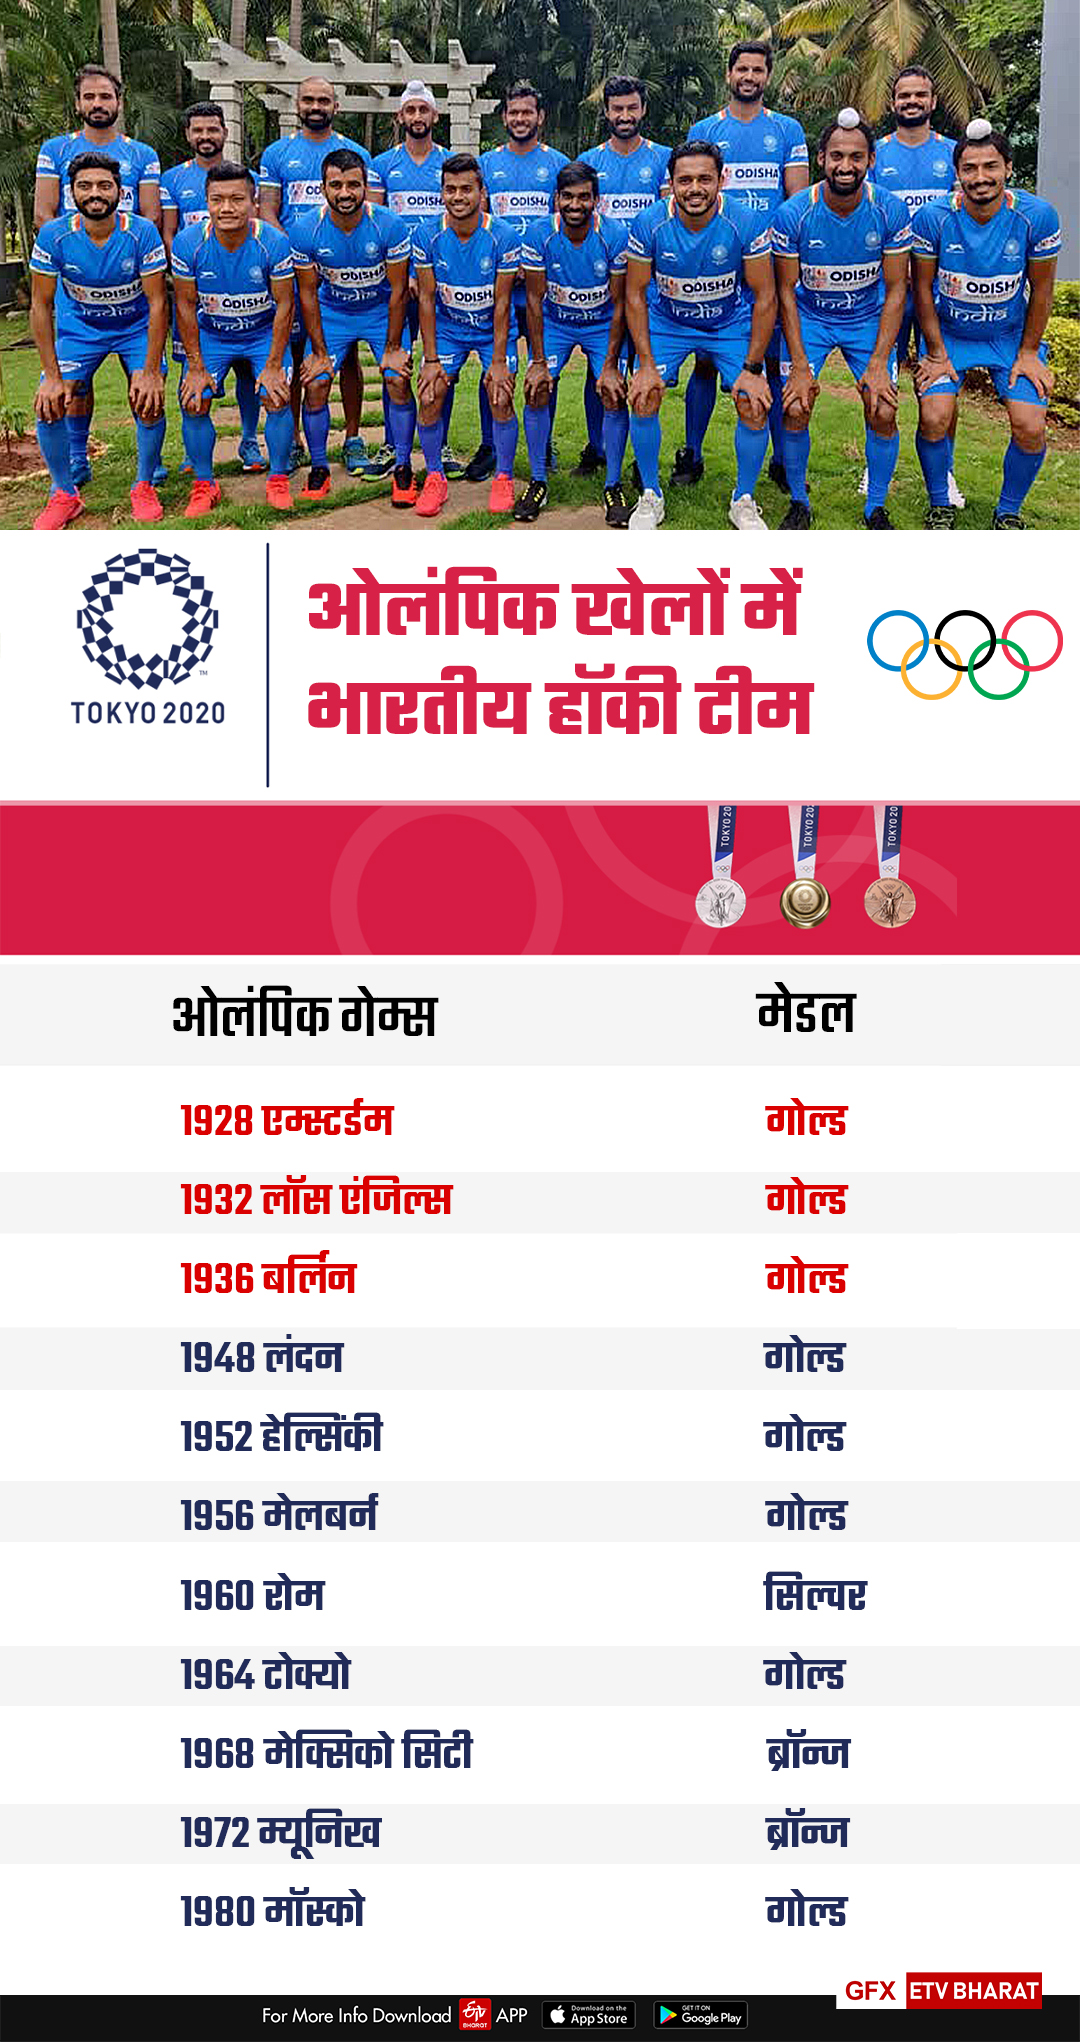 ओलंपिक खेलों में भारतीय टीम ने कब-कब जीते पदक